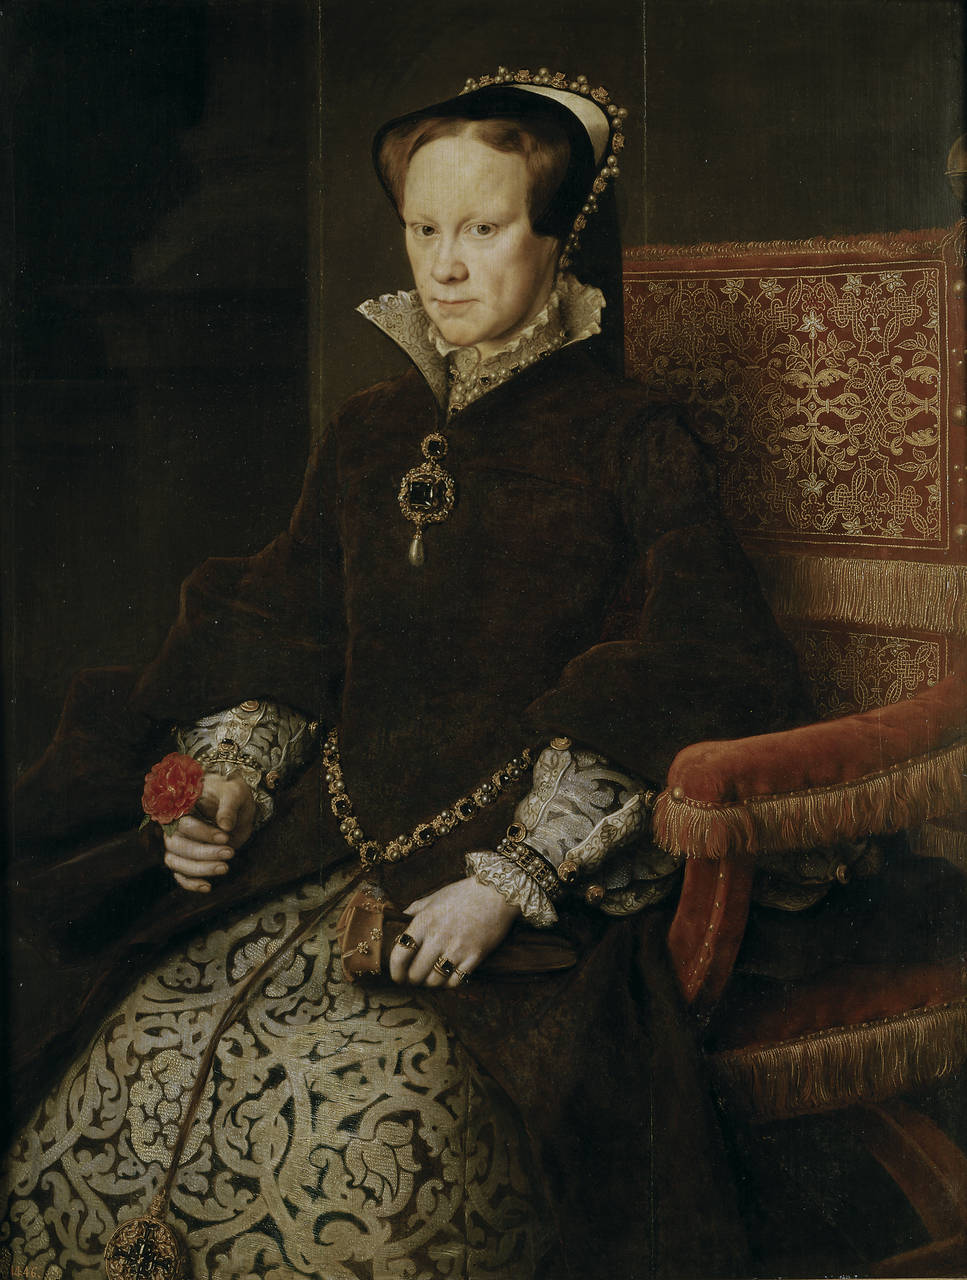 Portrait of Queen Mary I of England by Antonis Mor - 1554 - 109 × 84 cm Museo del Prado